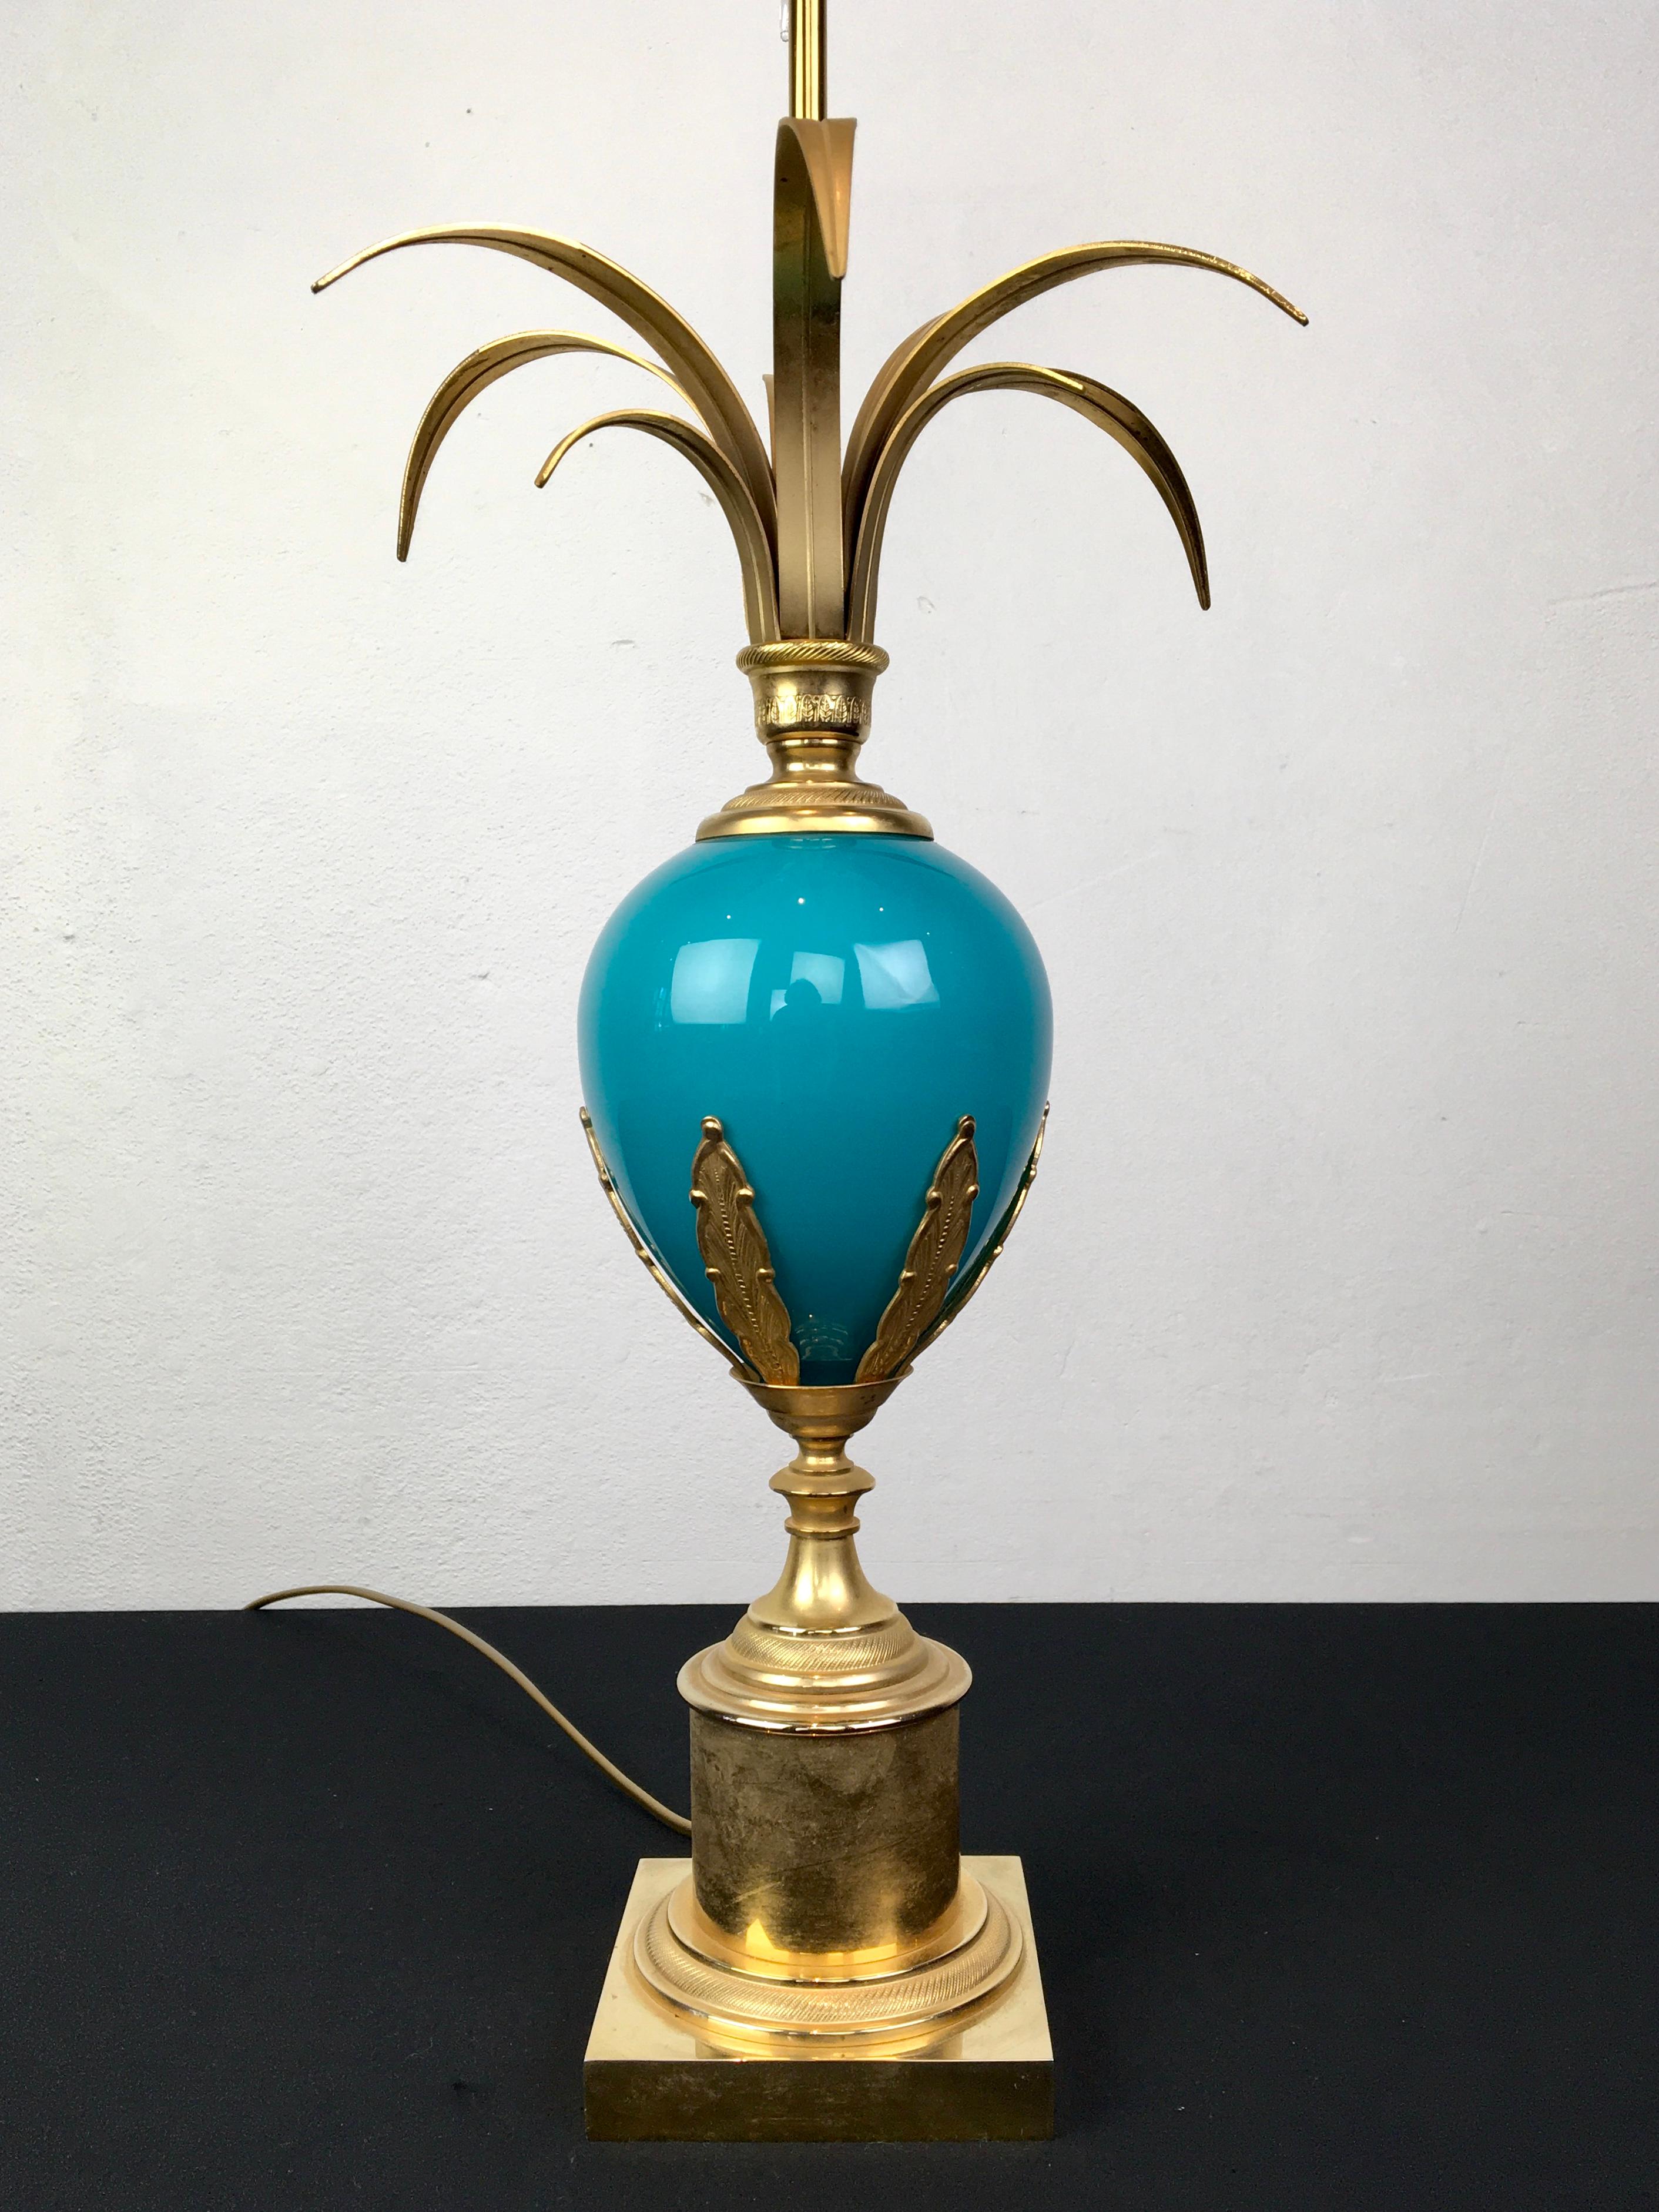 Lampe à poser en forme d'œuf d'autruche bleu turquoise par S.A. Boulanger. 
Lampe de table élégante avec un œuf d'autruche bleu opalin et des feuilles de palmier sur le dessus. 
La base est en laiton avec des feuilles moulées en laiton sur l'œuf